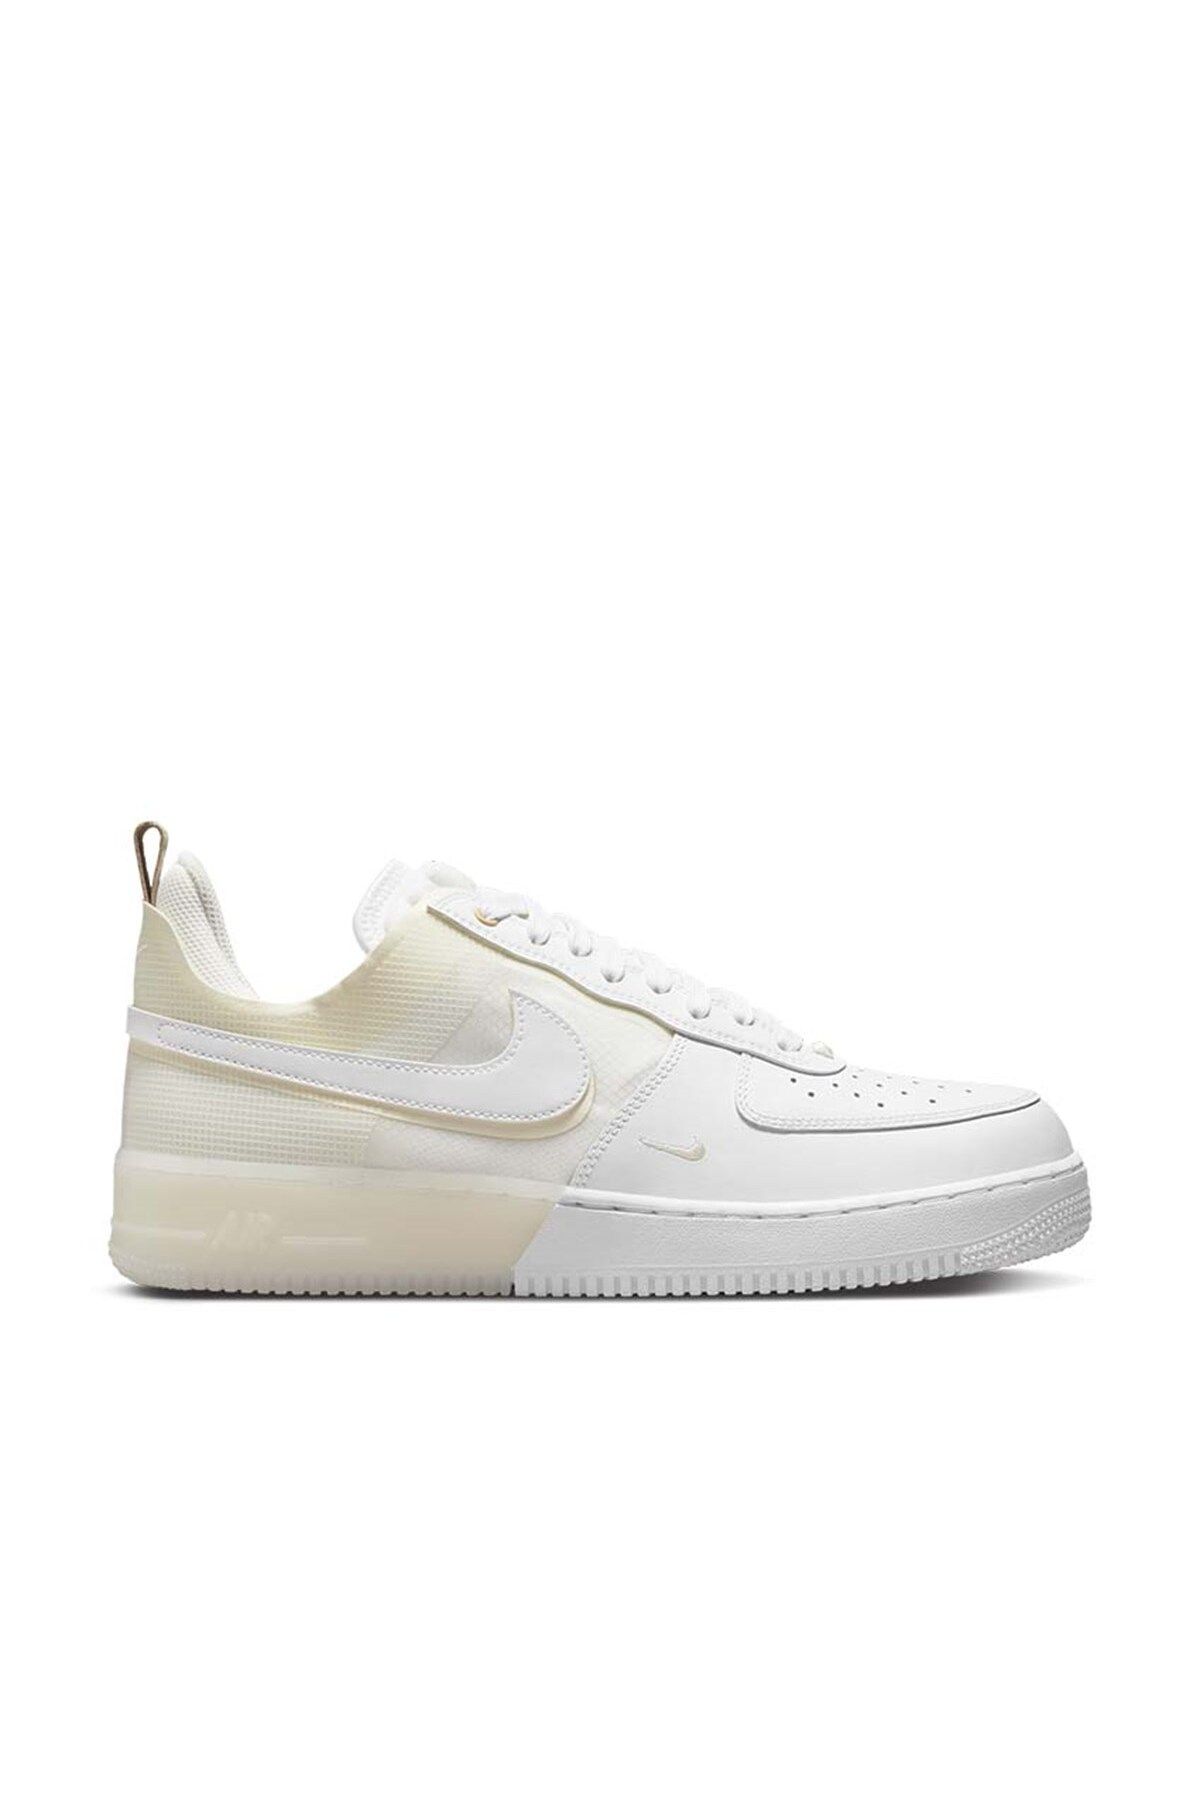 Nike Air Force 1 React Coconut Milk Erkek Sneakers Dh7615-100